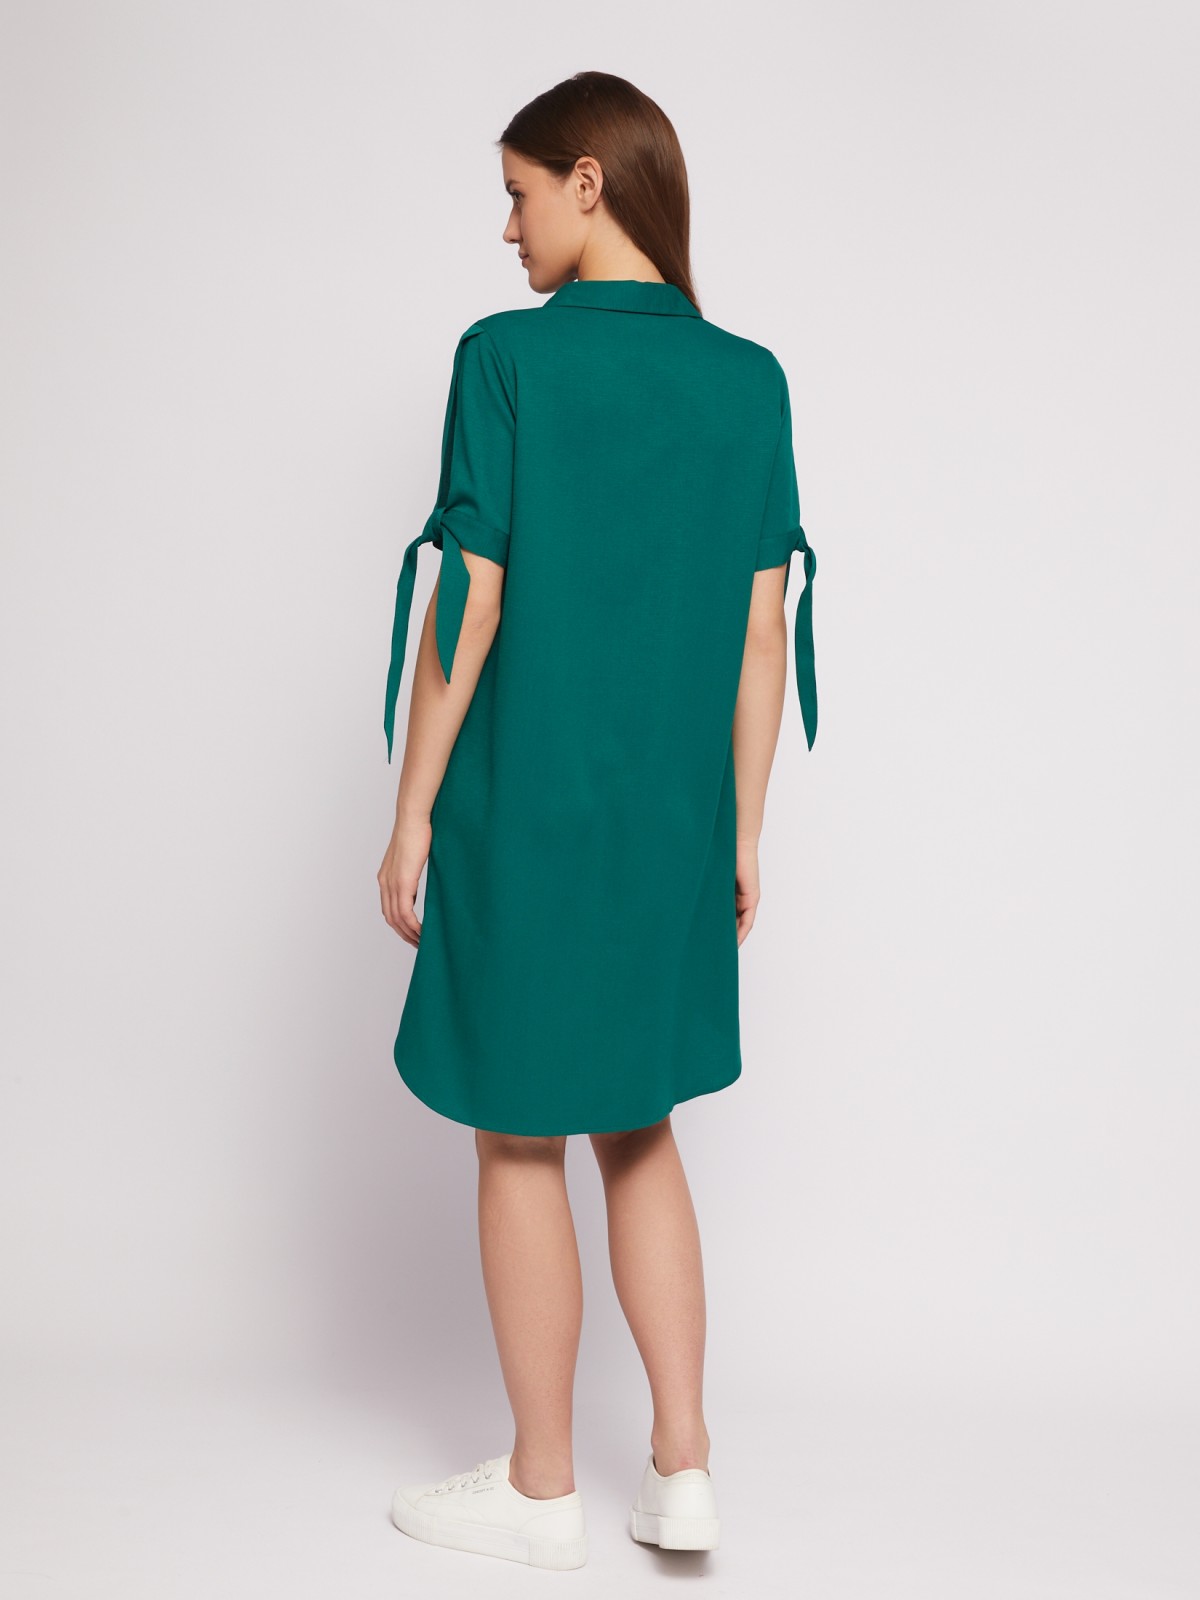 Платье-рубашка мини с акцентом на рукавах zolla 024218239333, цвет темно-зеленый, размер XXXL - фото 6